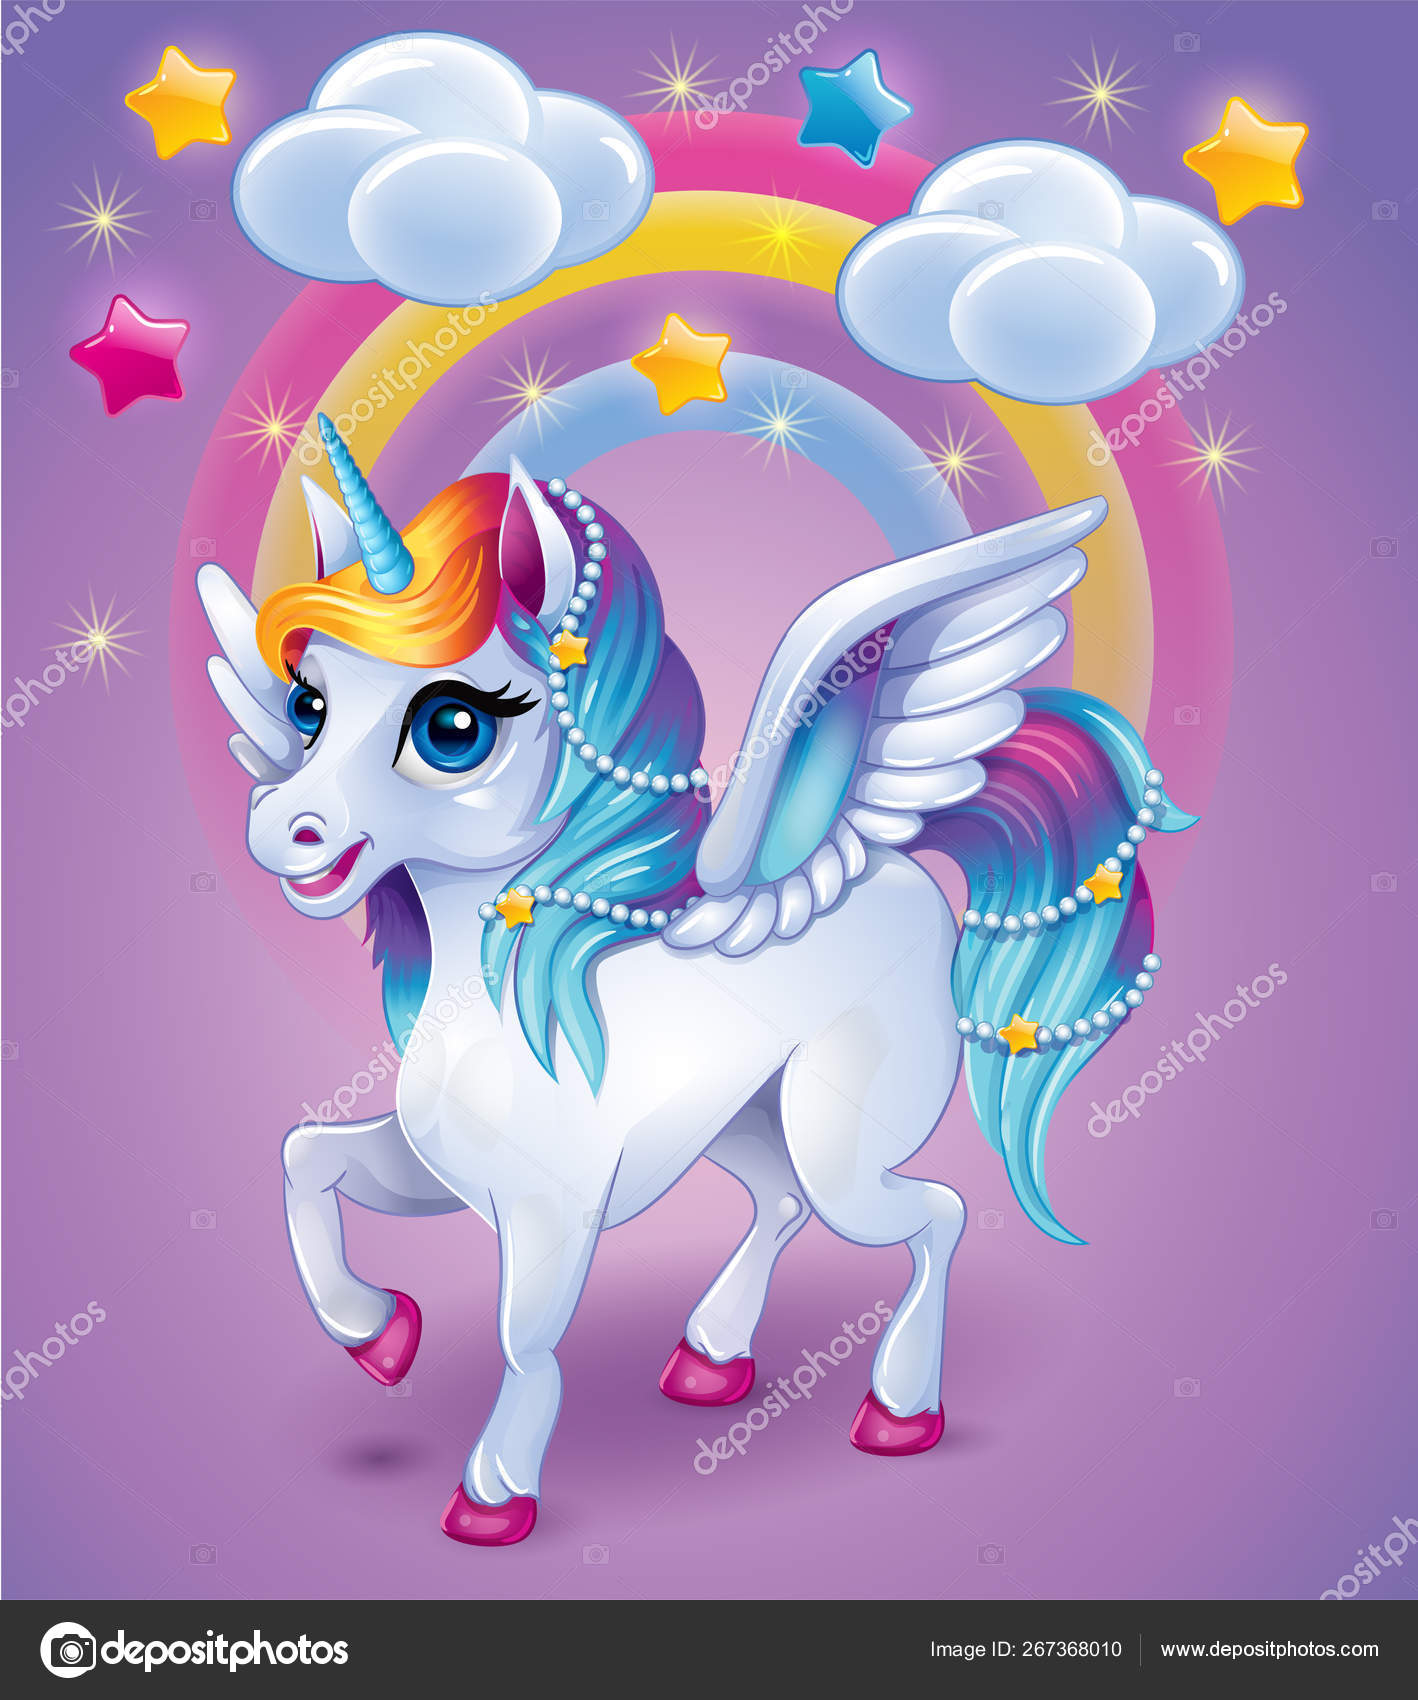 Cute Rainbow Unicorn Rainbow Background Cartoon Vector Character ...